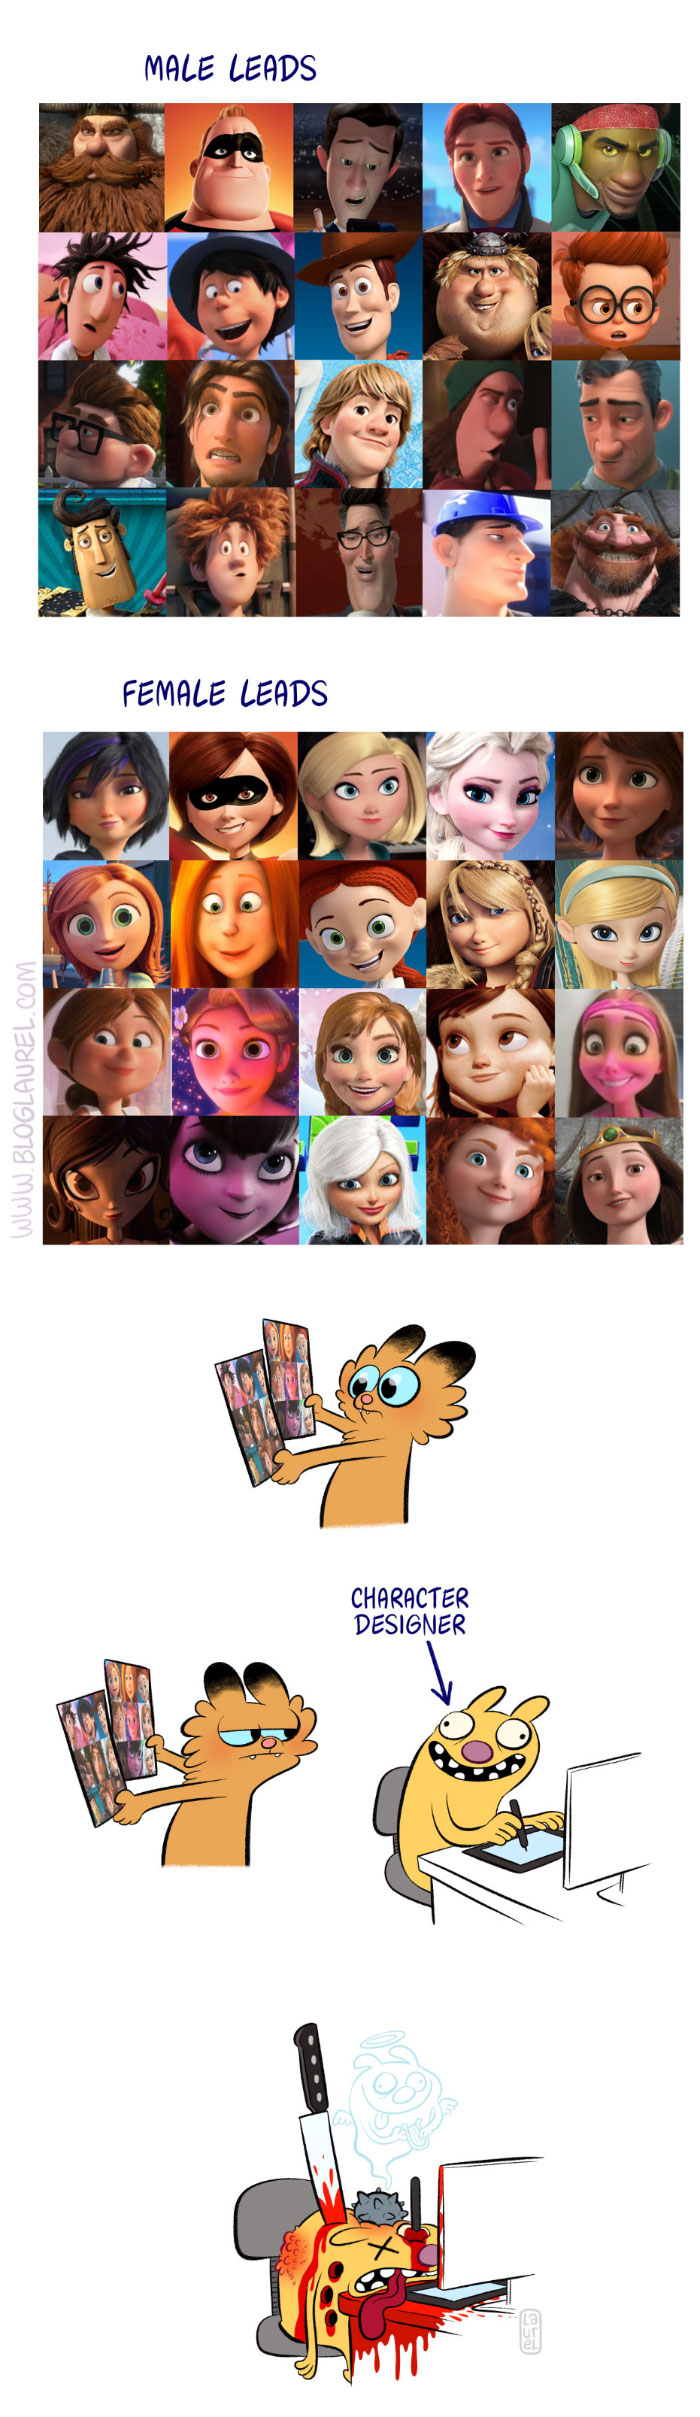 Le sexisme des character designers chez Disney, Pixar, Dreamworks et autres. 